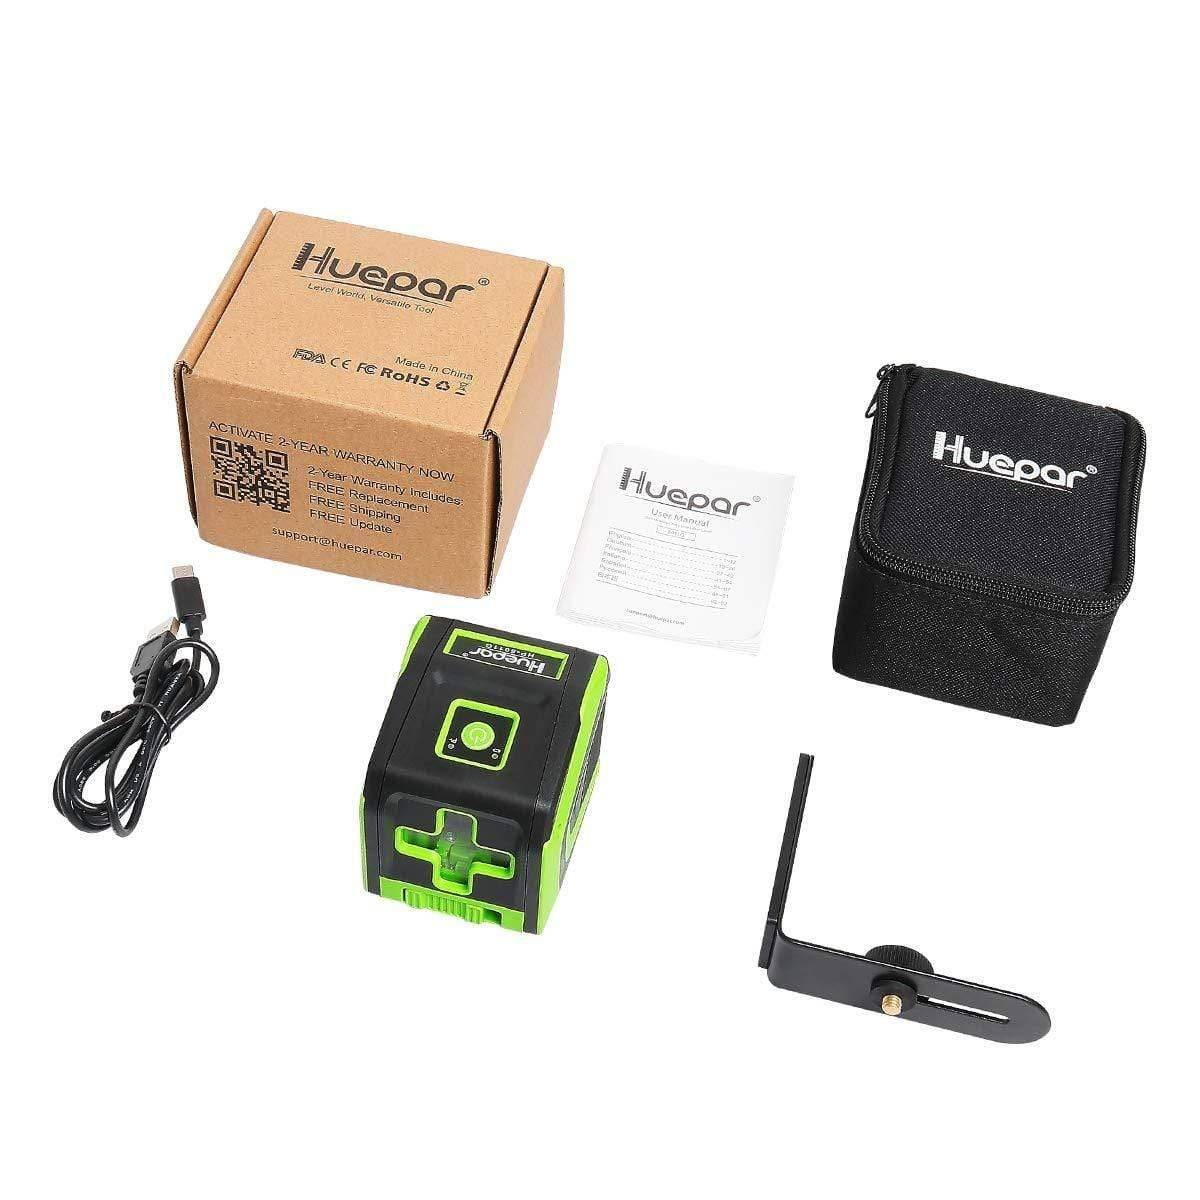 Huepar 5011G - Green Portable Line Laser with Pulse Mode & 360° Magnetic Rotating Base - HUEPAR UK